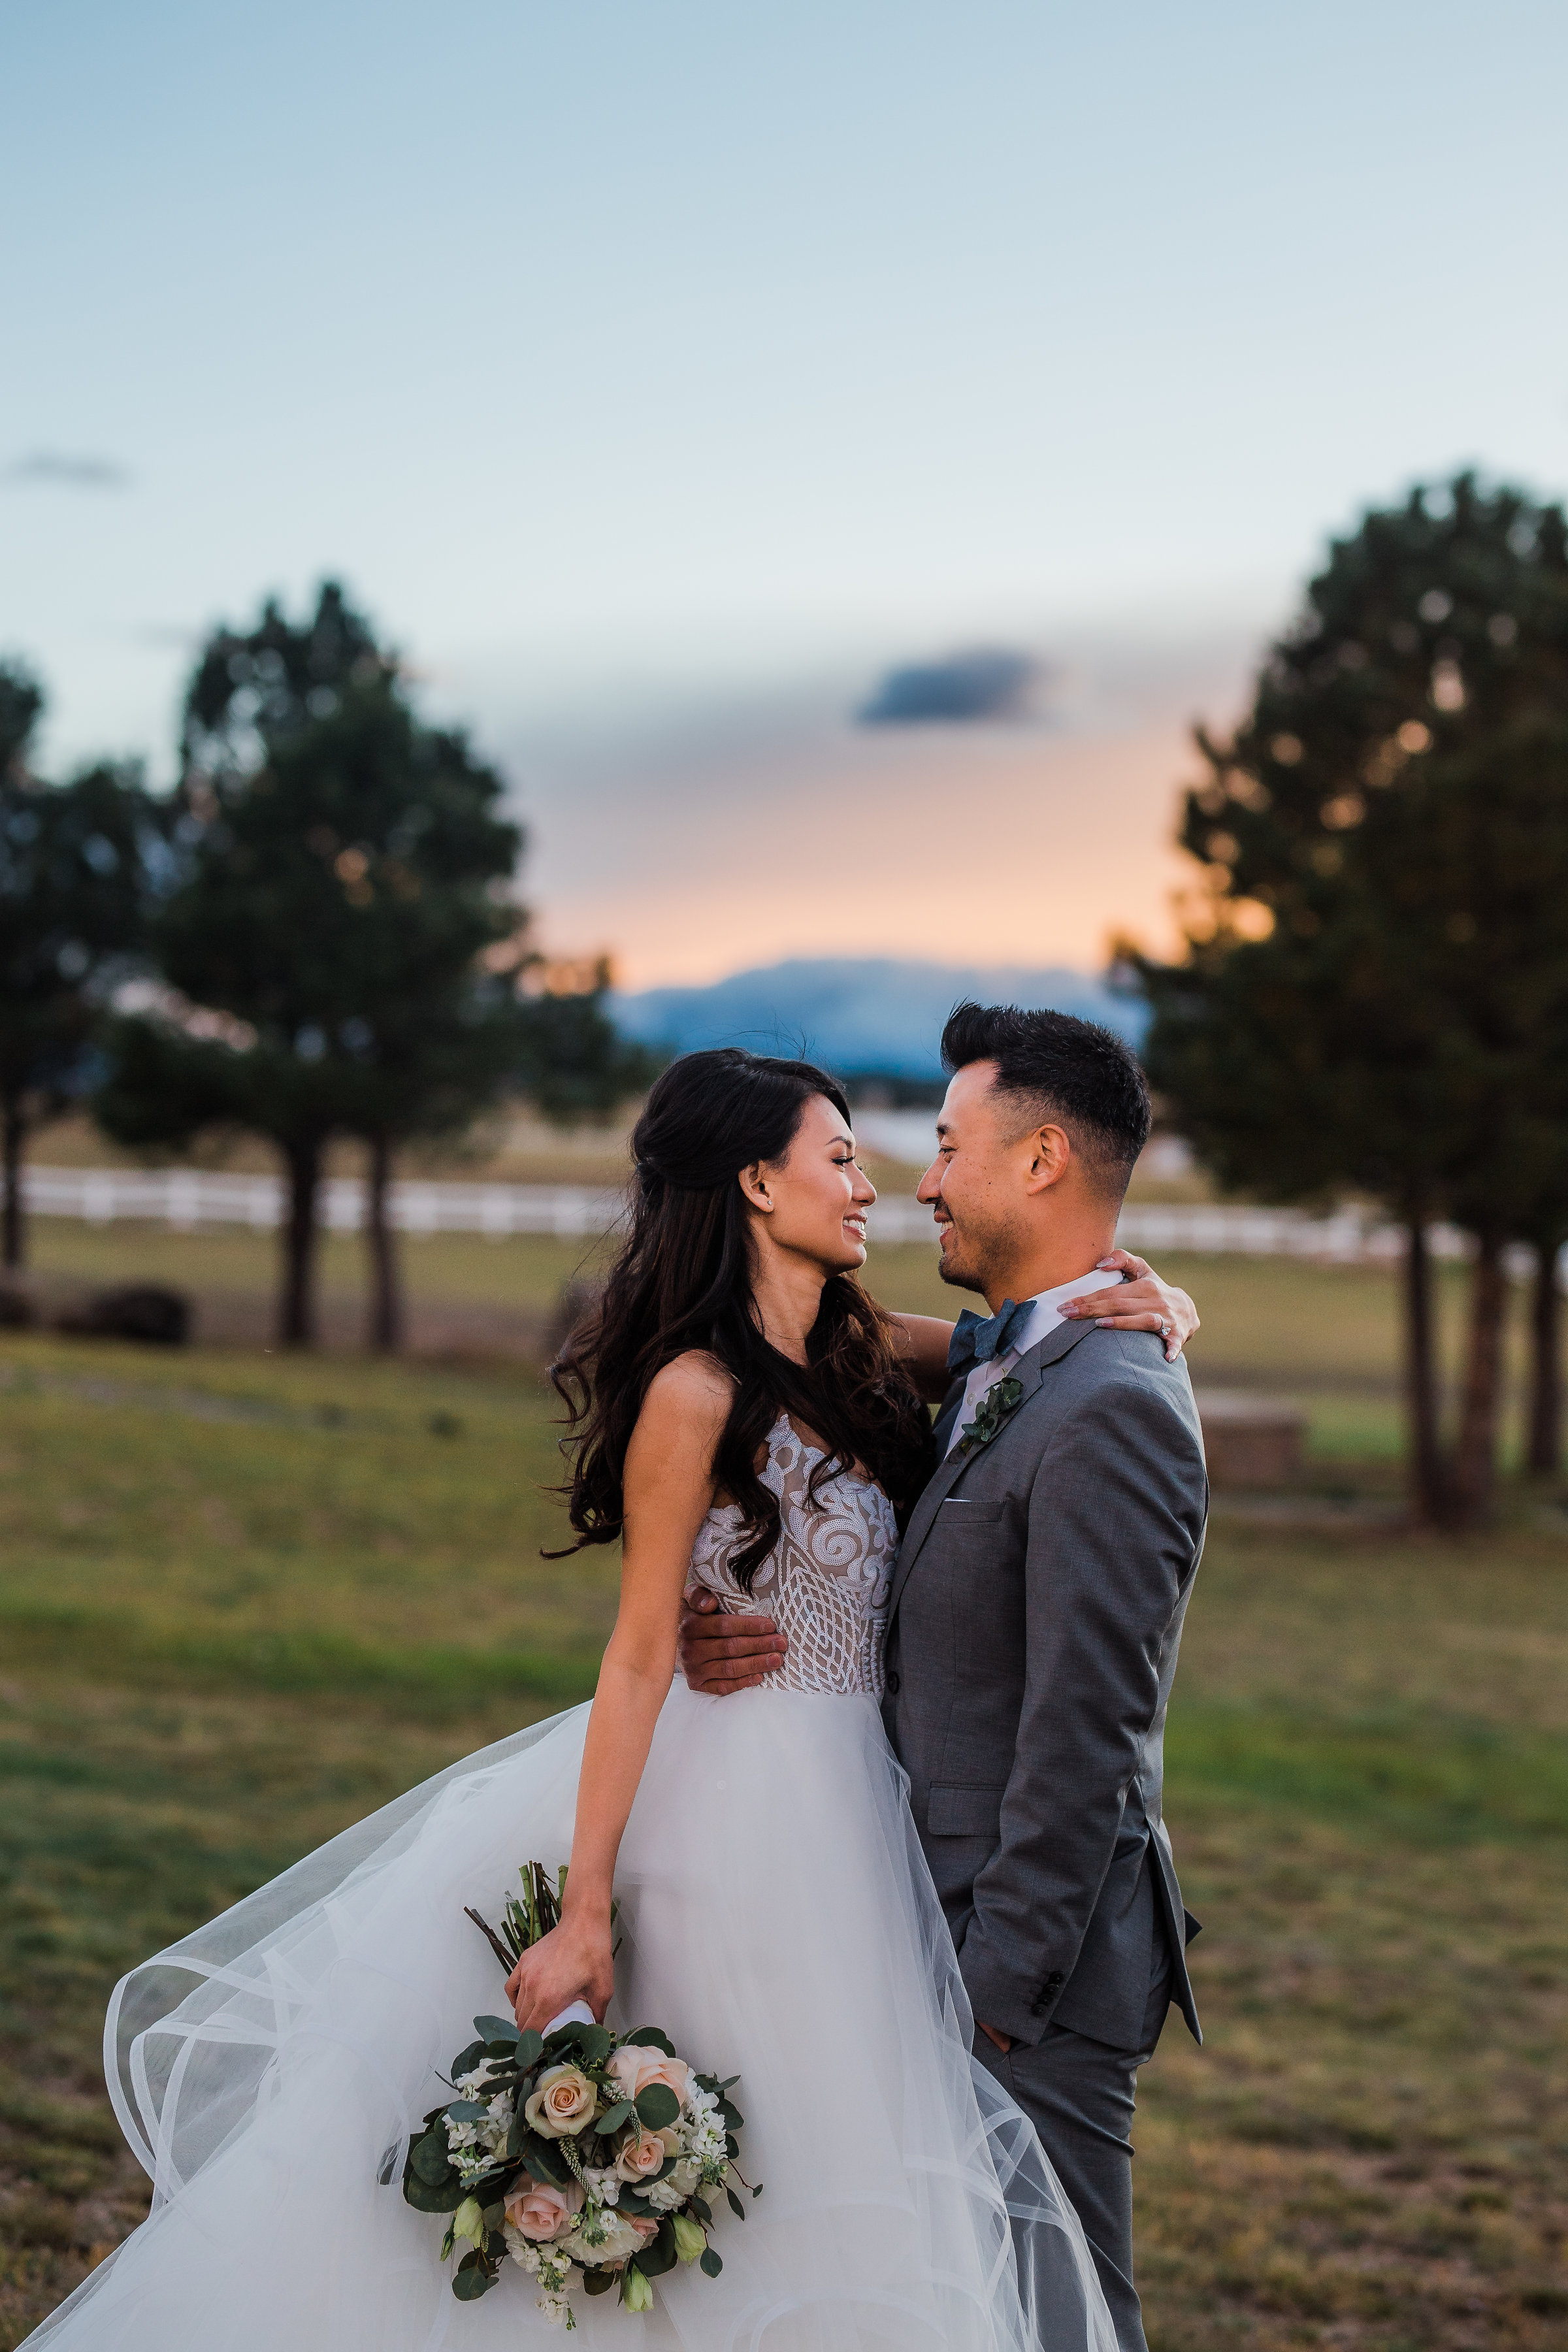 Pikes Peak backdrop wedding photos Colorado Springs